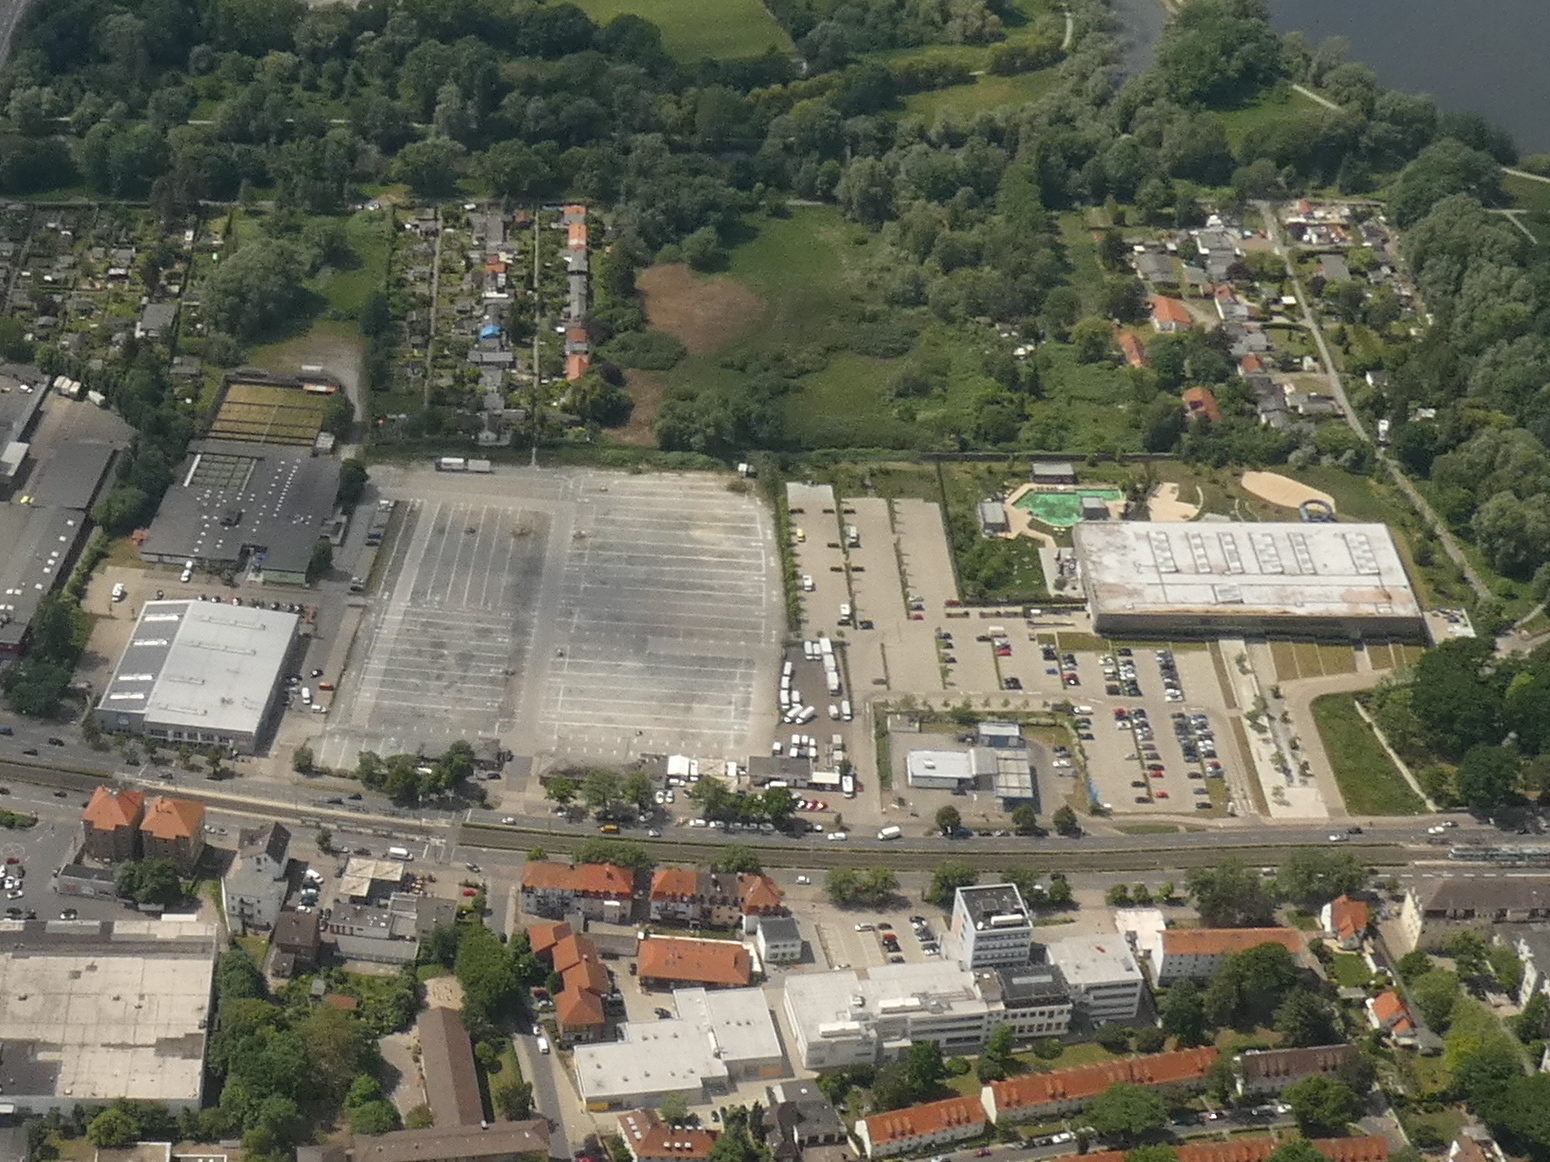 Luftbild Schützenplatz 2019 - Blick von Osten (Wird bei Klick vergrößert)